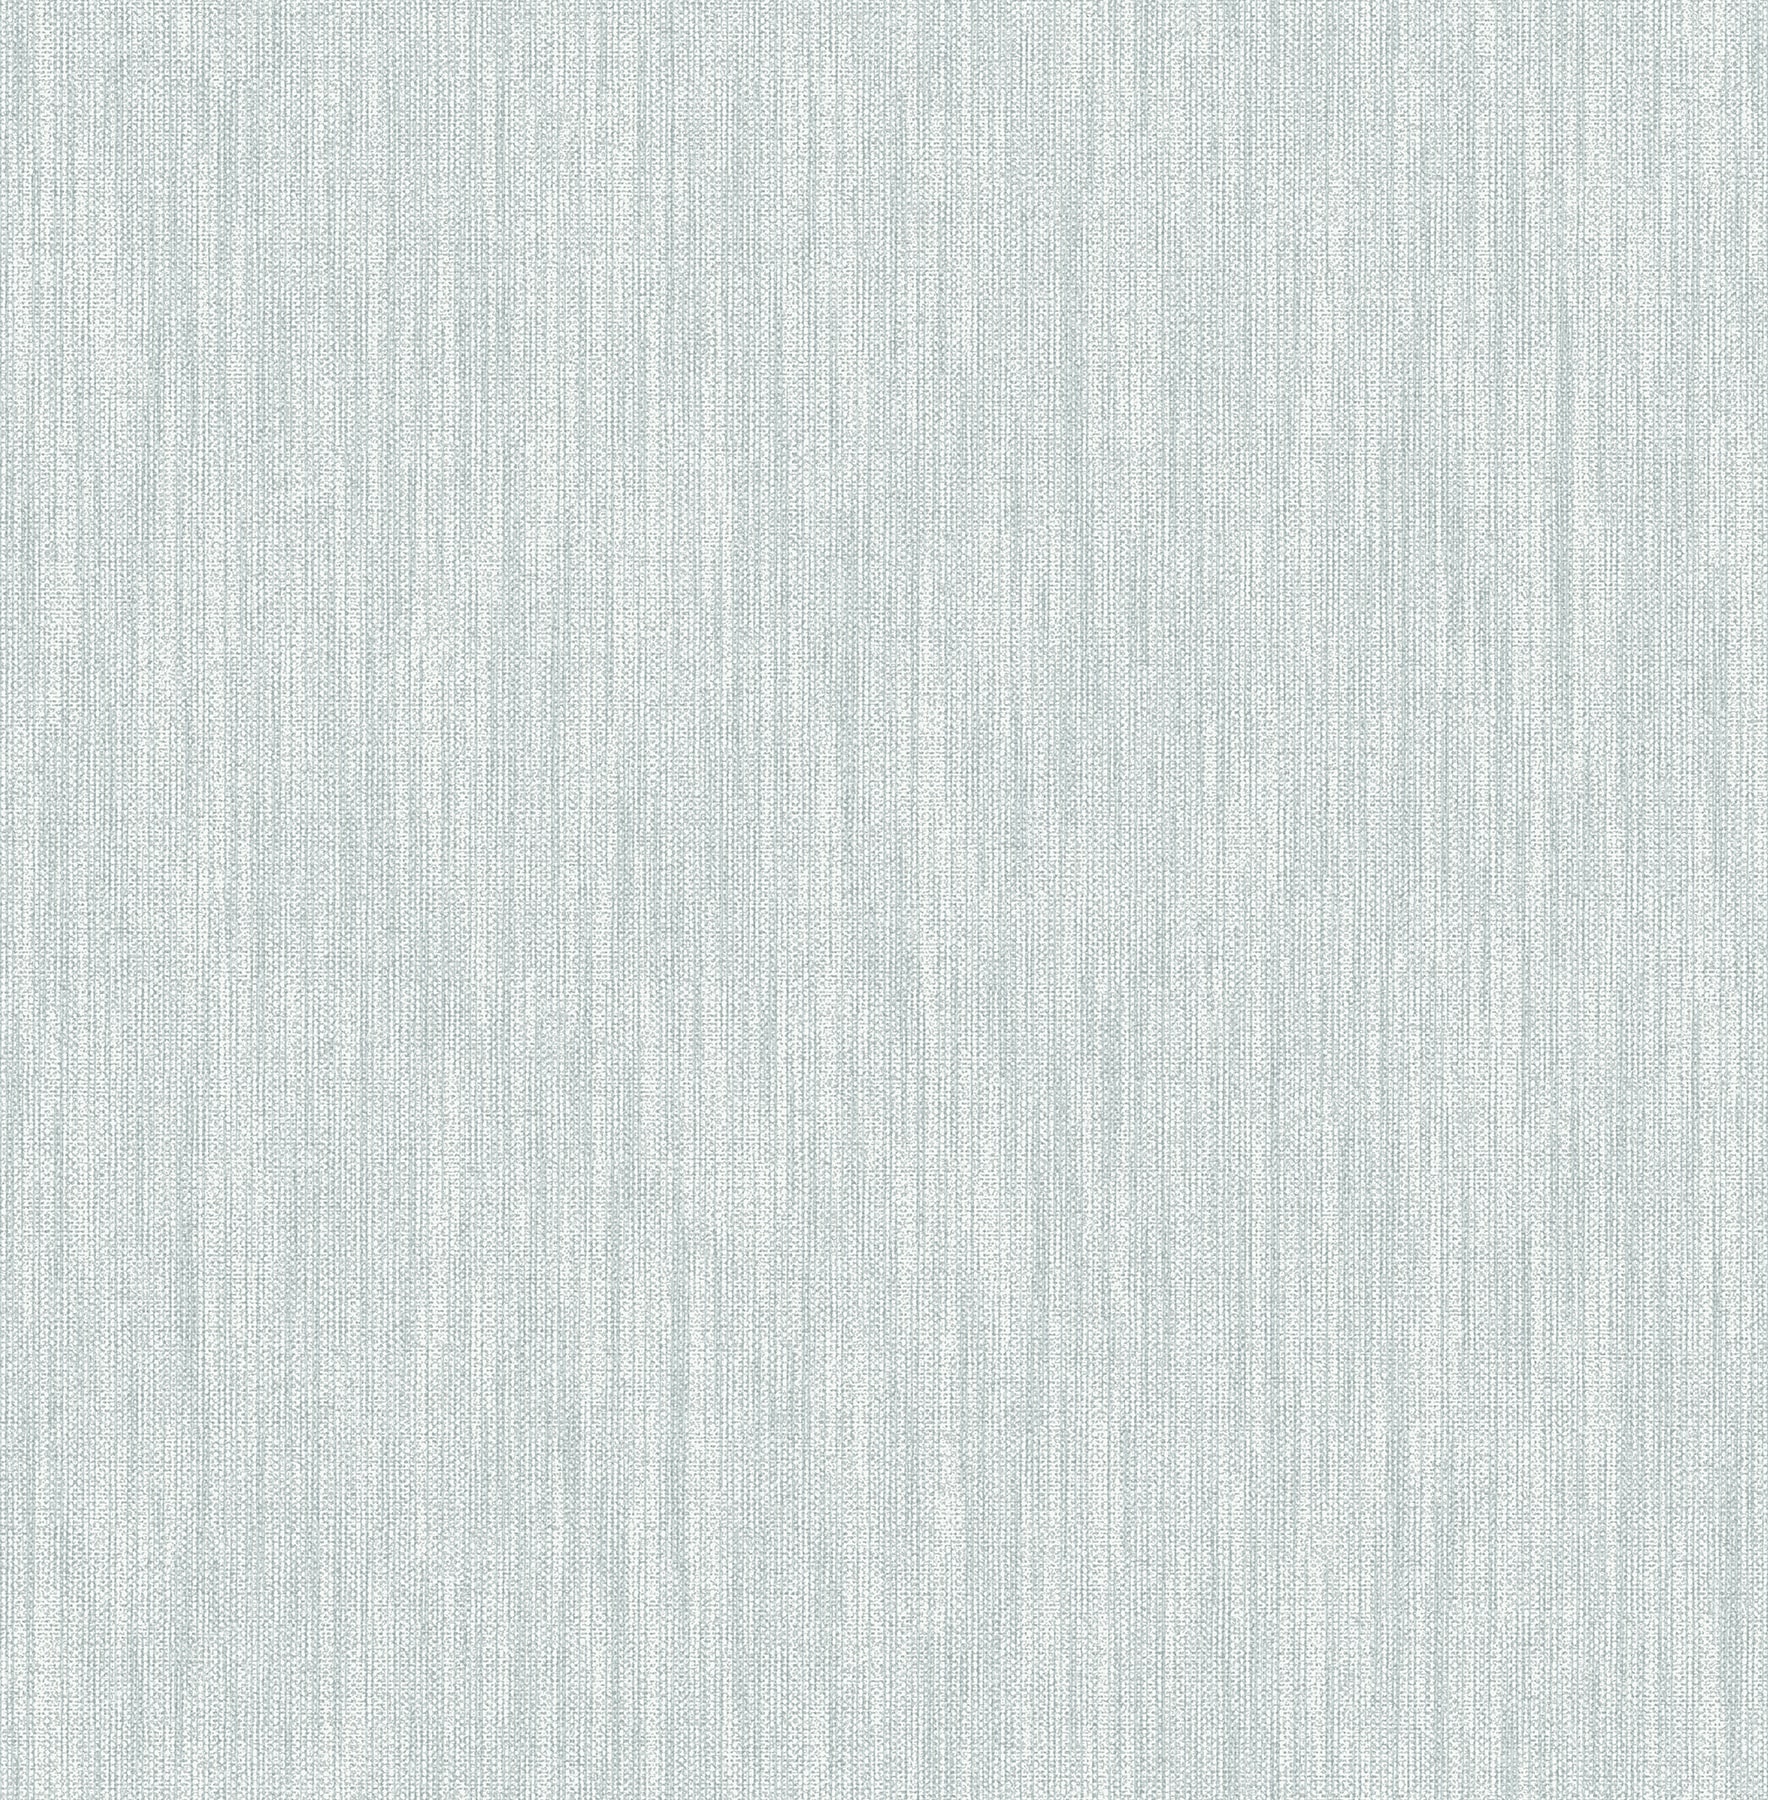 Muriva Linen Texture Grey Ochre Blue Subtle Metallic Fabric Effect Wallpaper 